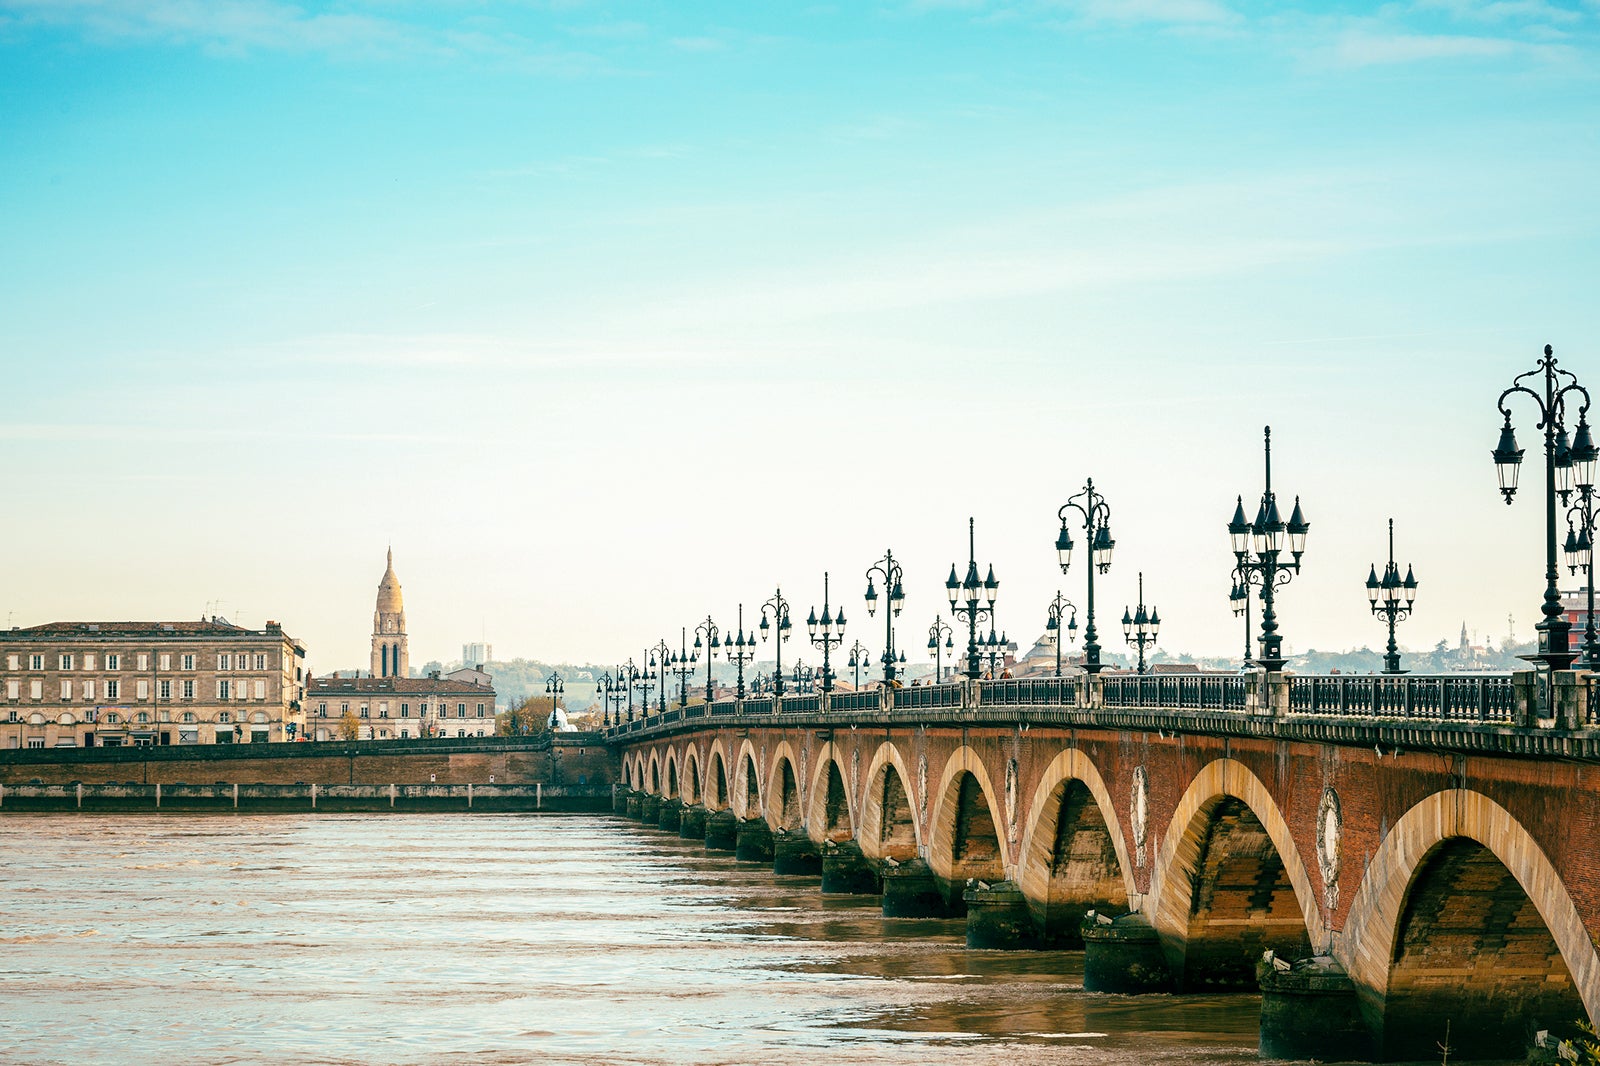 A bridge spans the river in Bordeaux, France